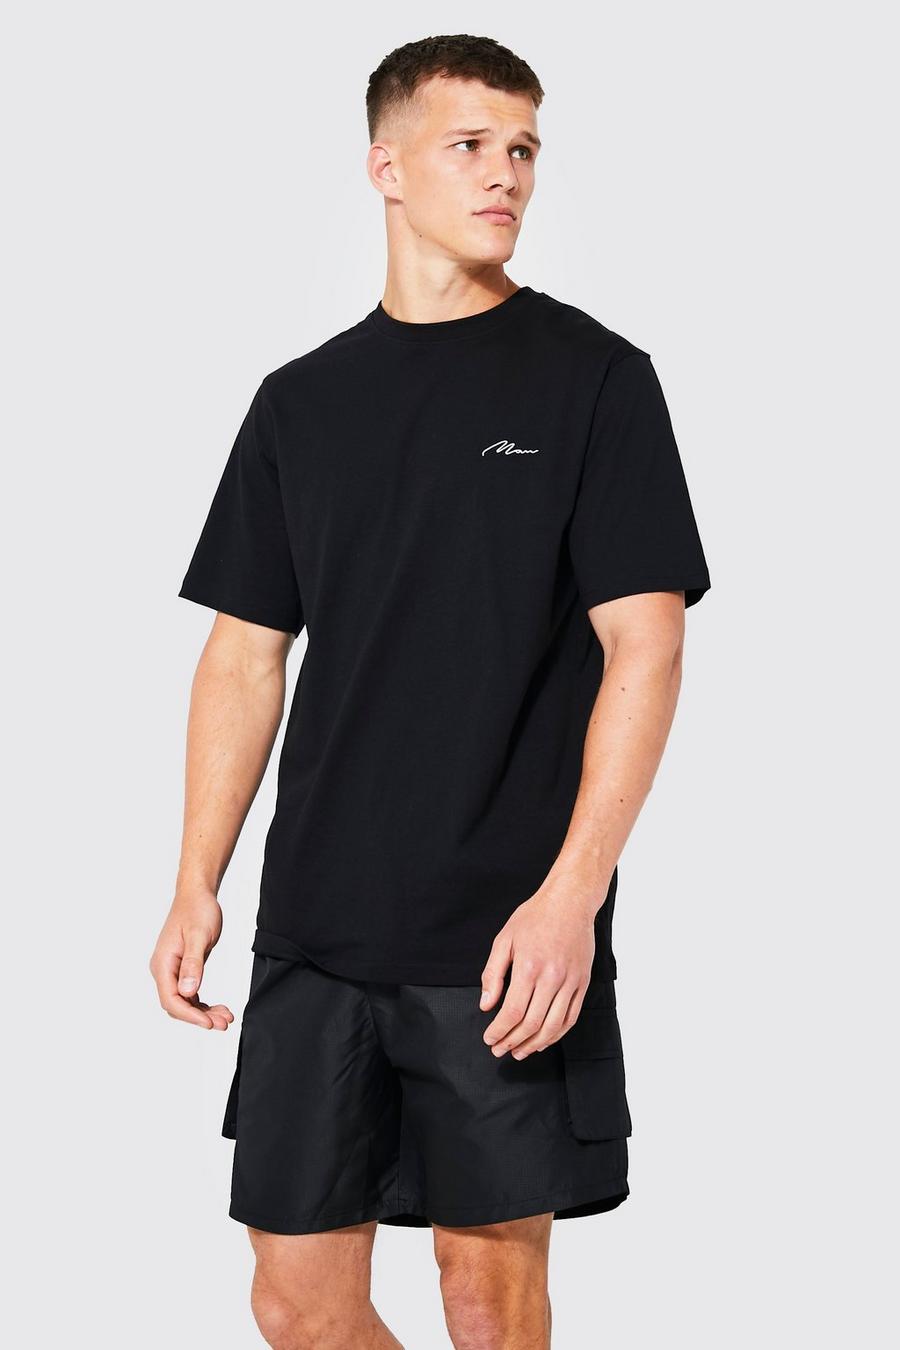 T-shirt Tall con logo e scritta Man, Black nero